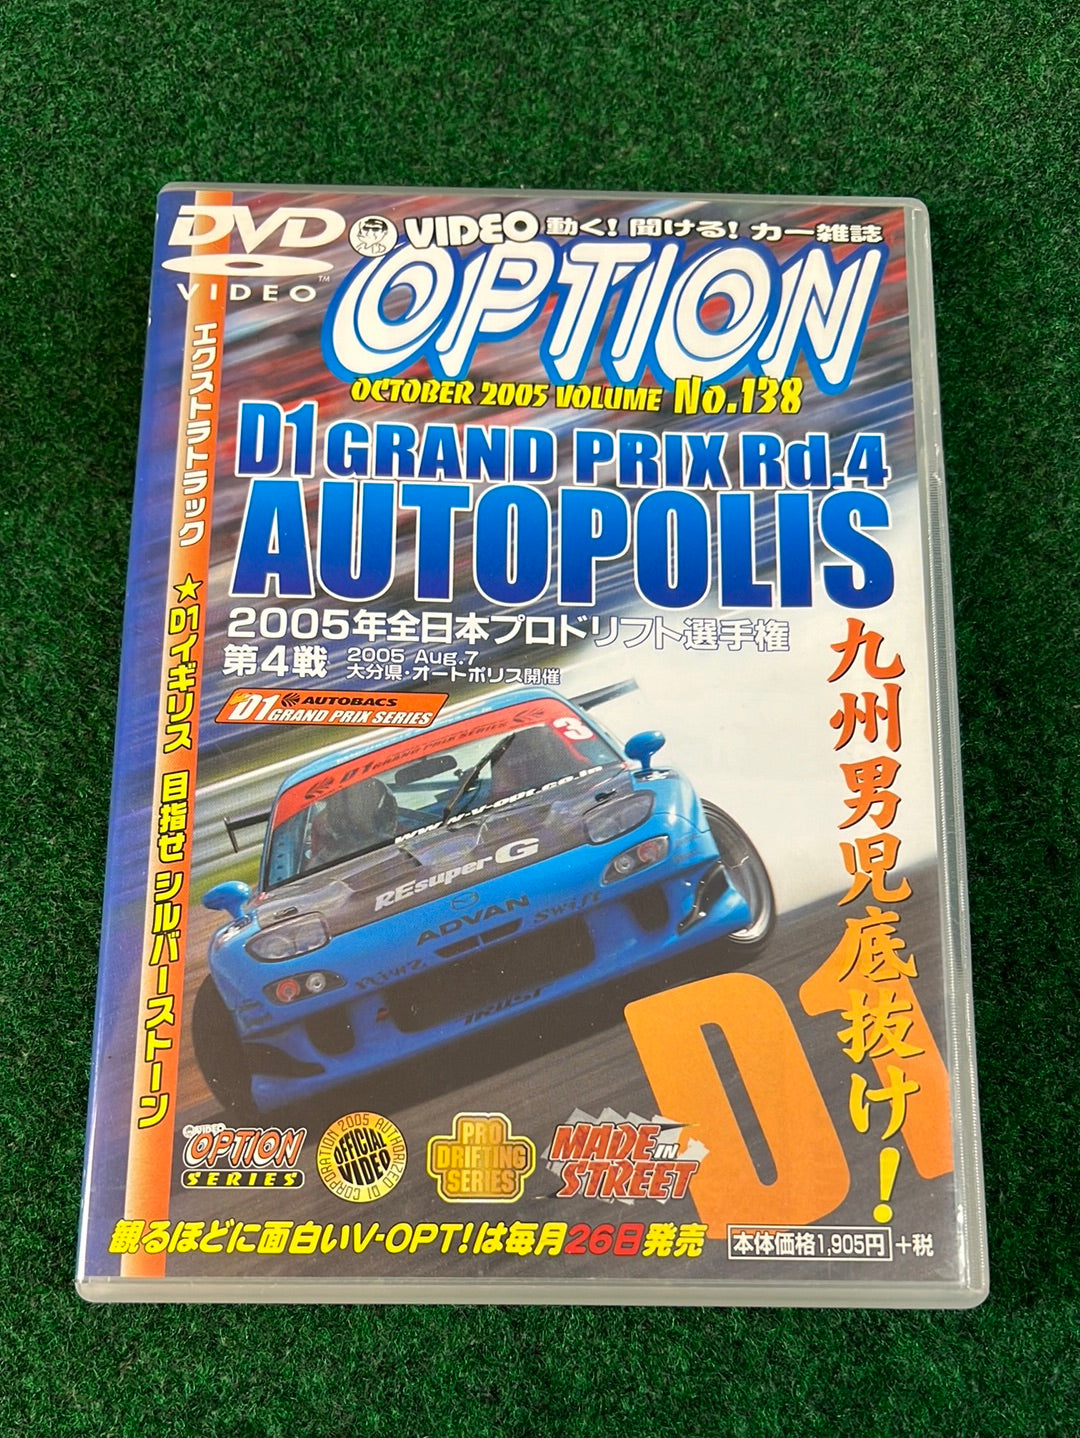 Option Video DVD - October 2005 Vol. 138 DVD